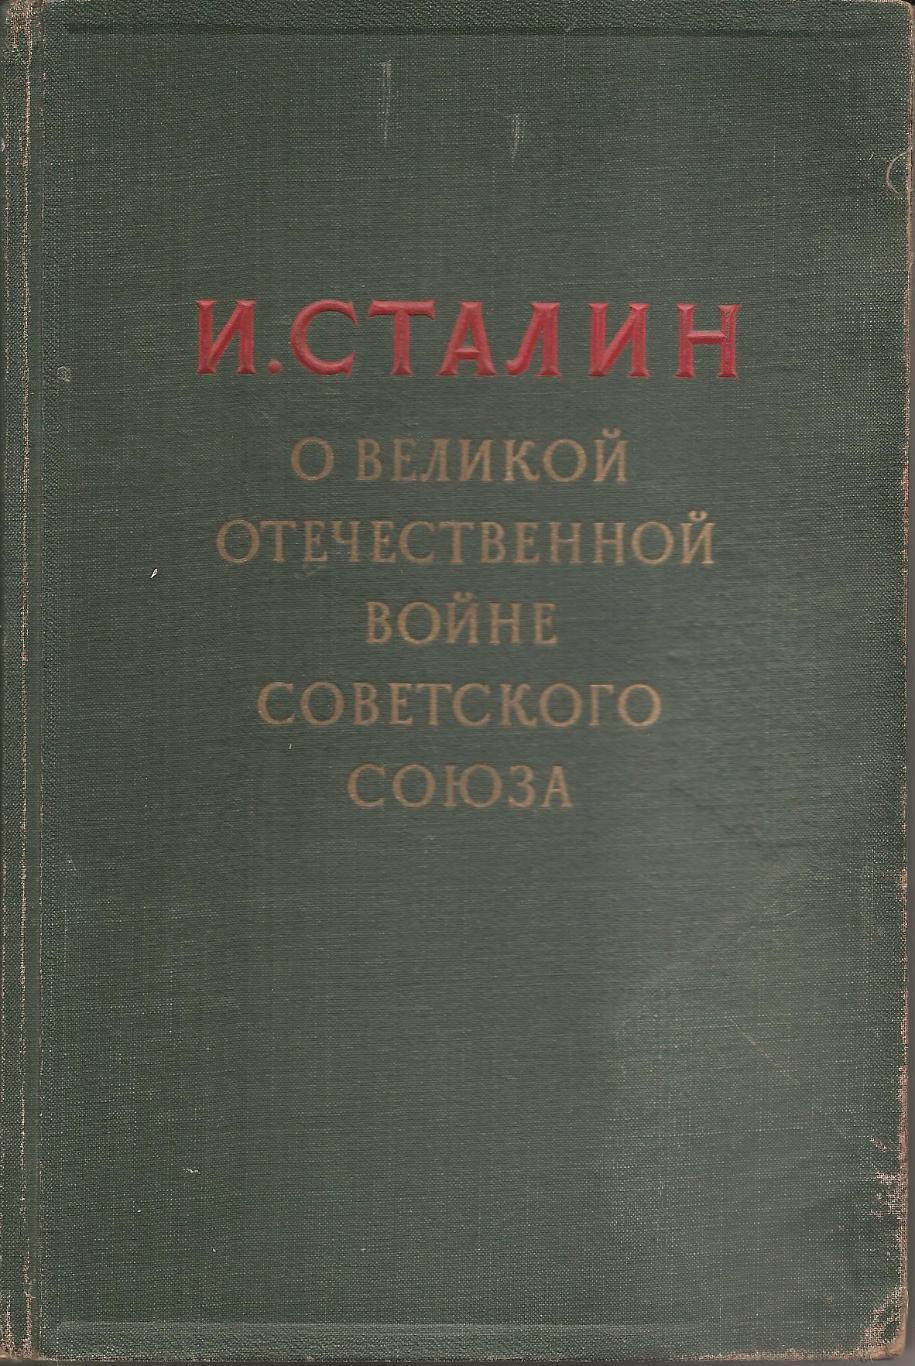 И. Сталин О Великой Отечественной войне Советского союза. 1948 г.